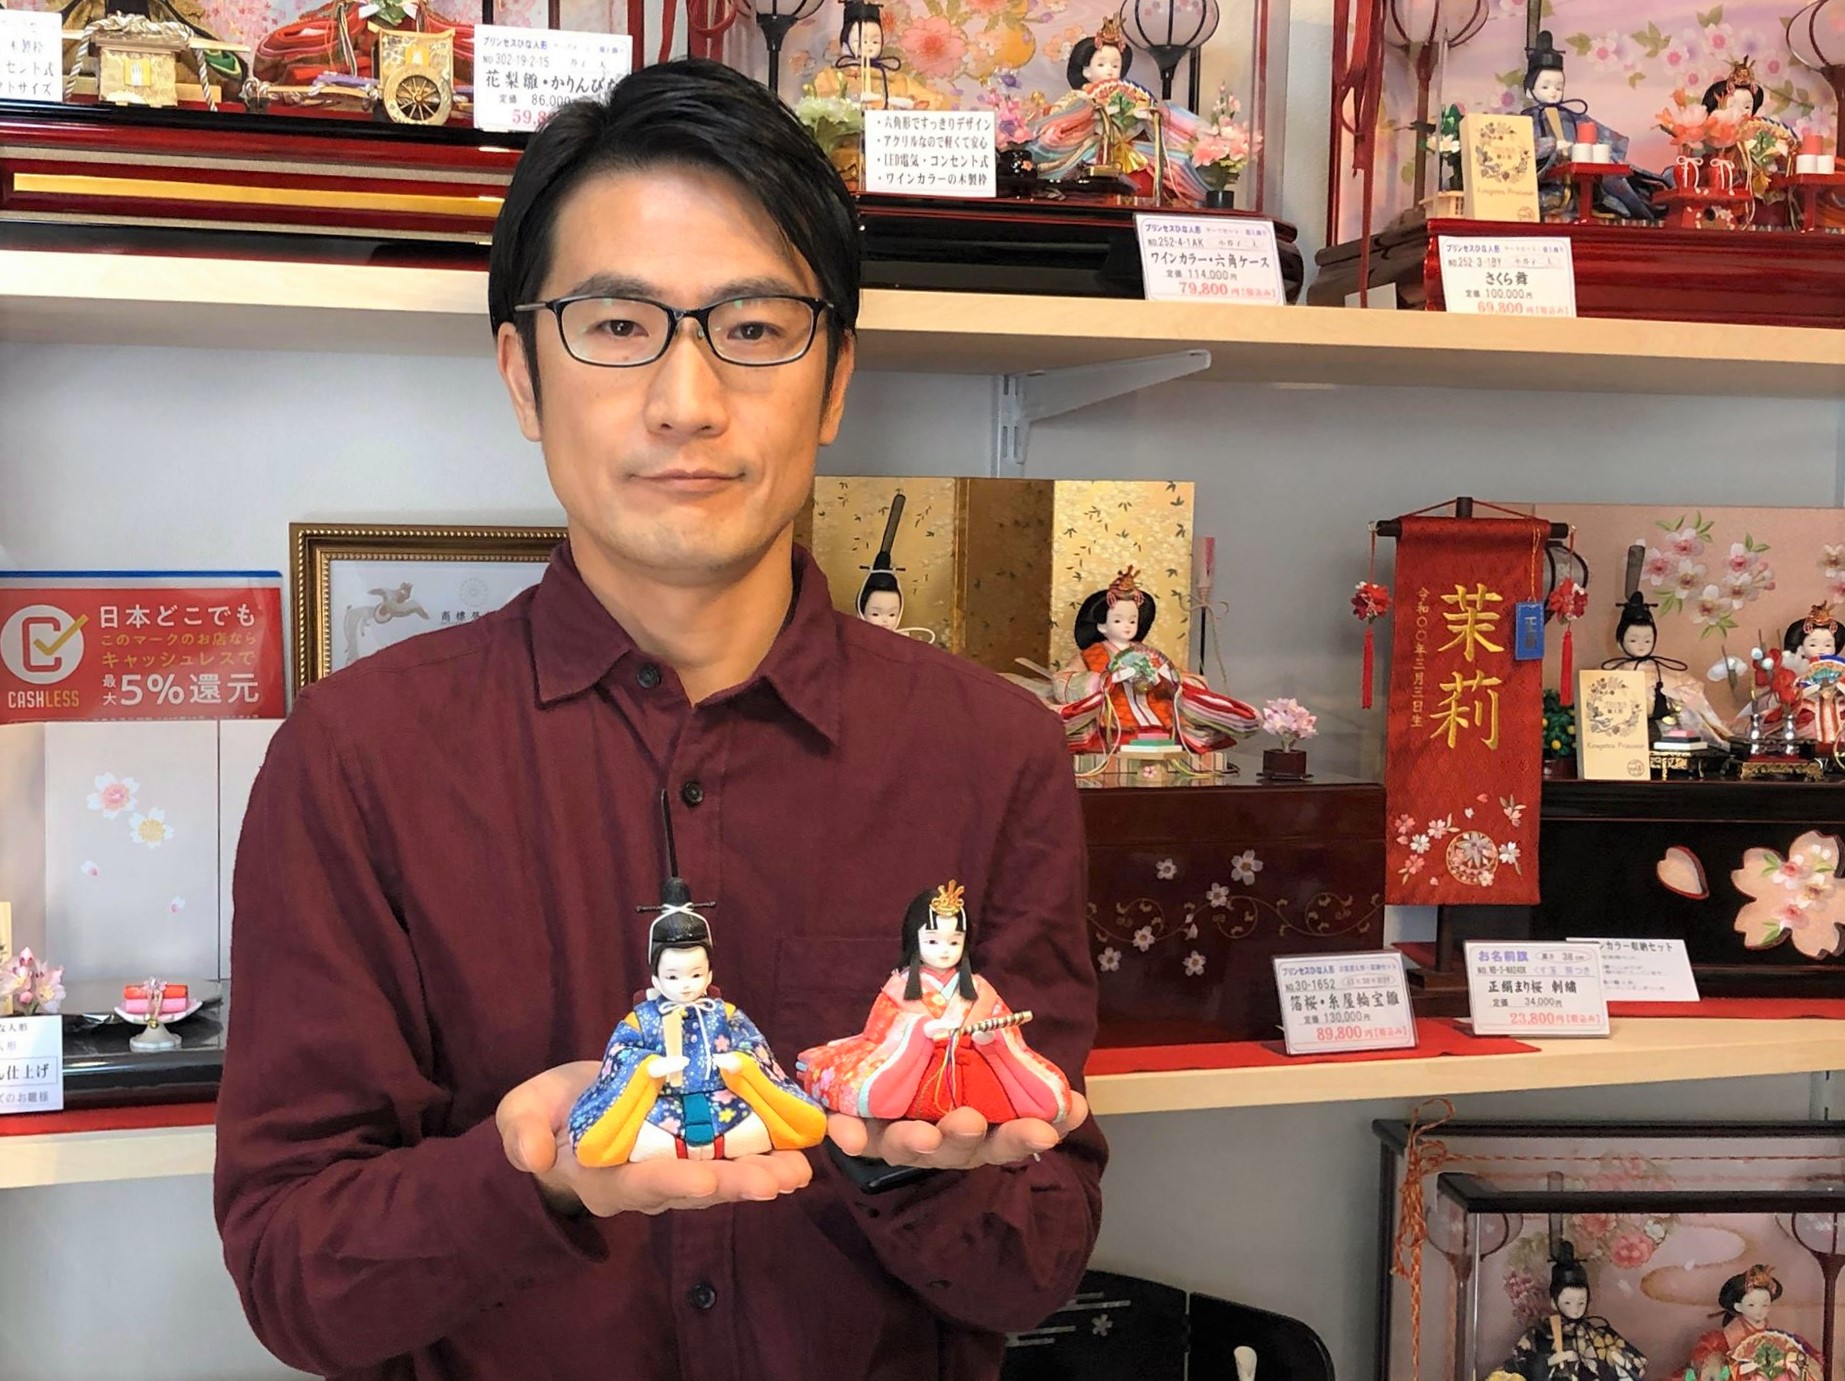 高崎市山名町 人形職人が伝える「文化」と「願い」 | 高崎で暮らす